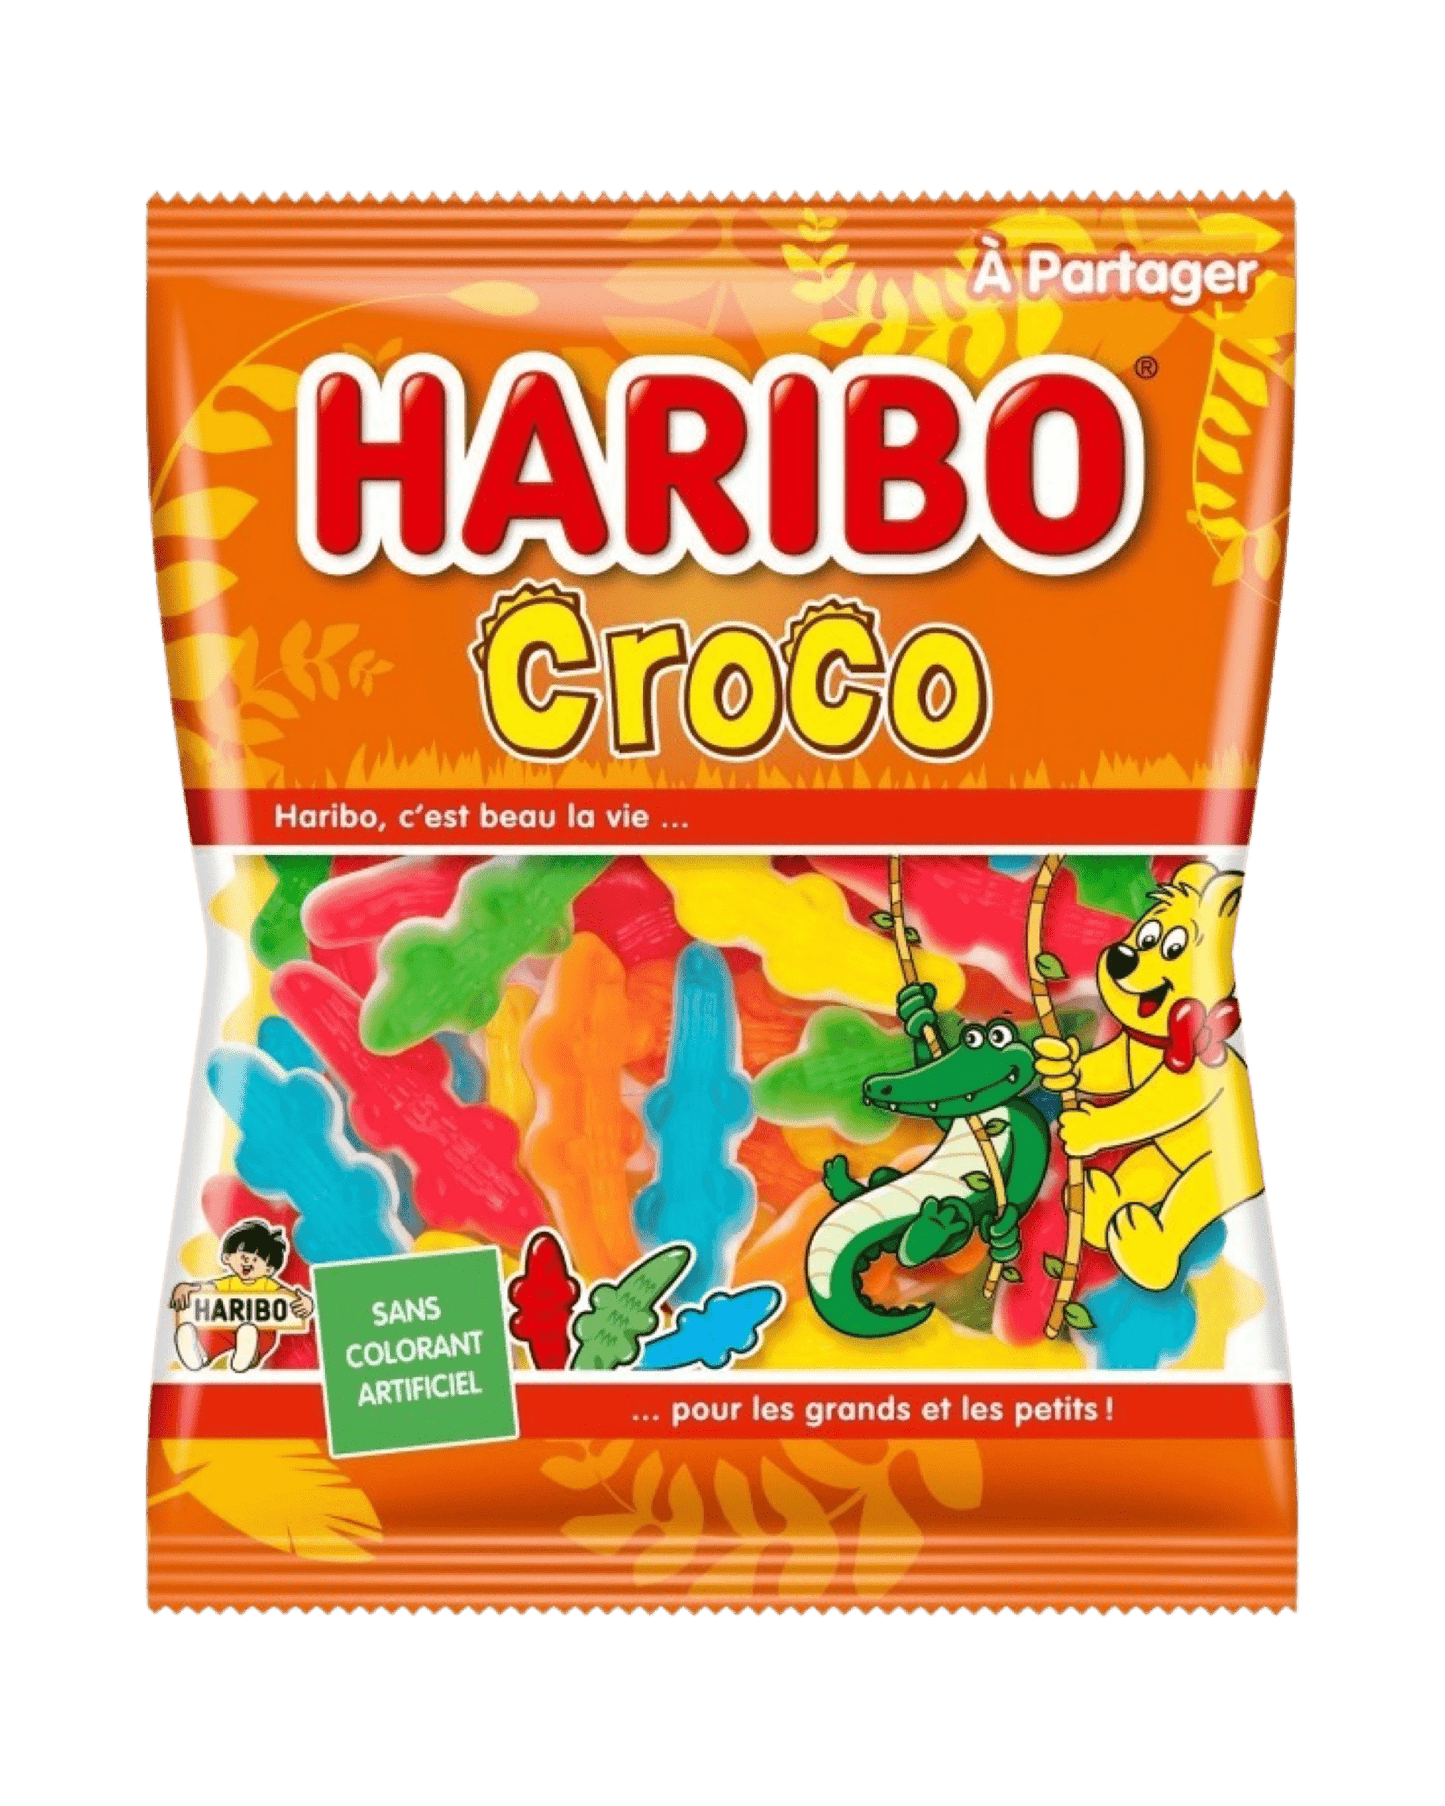 Haribo “Croco” (France) - Exotic Soda Company